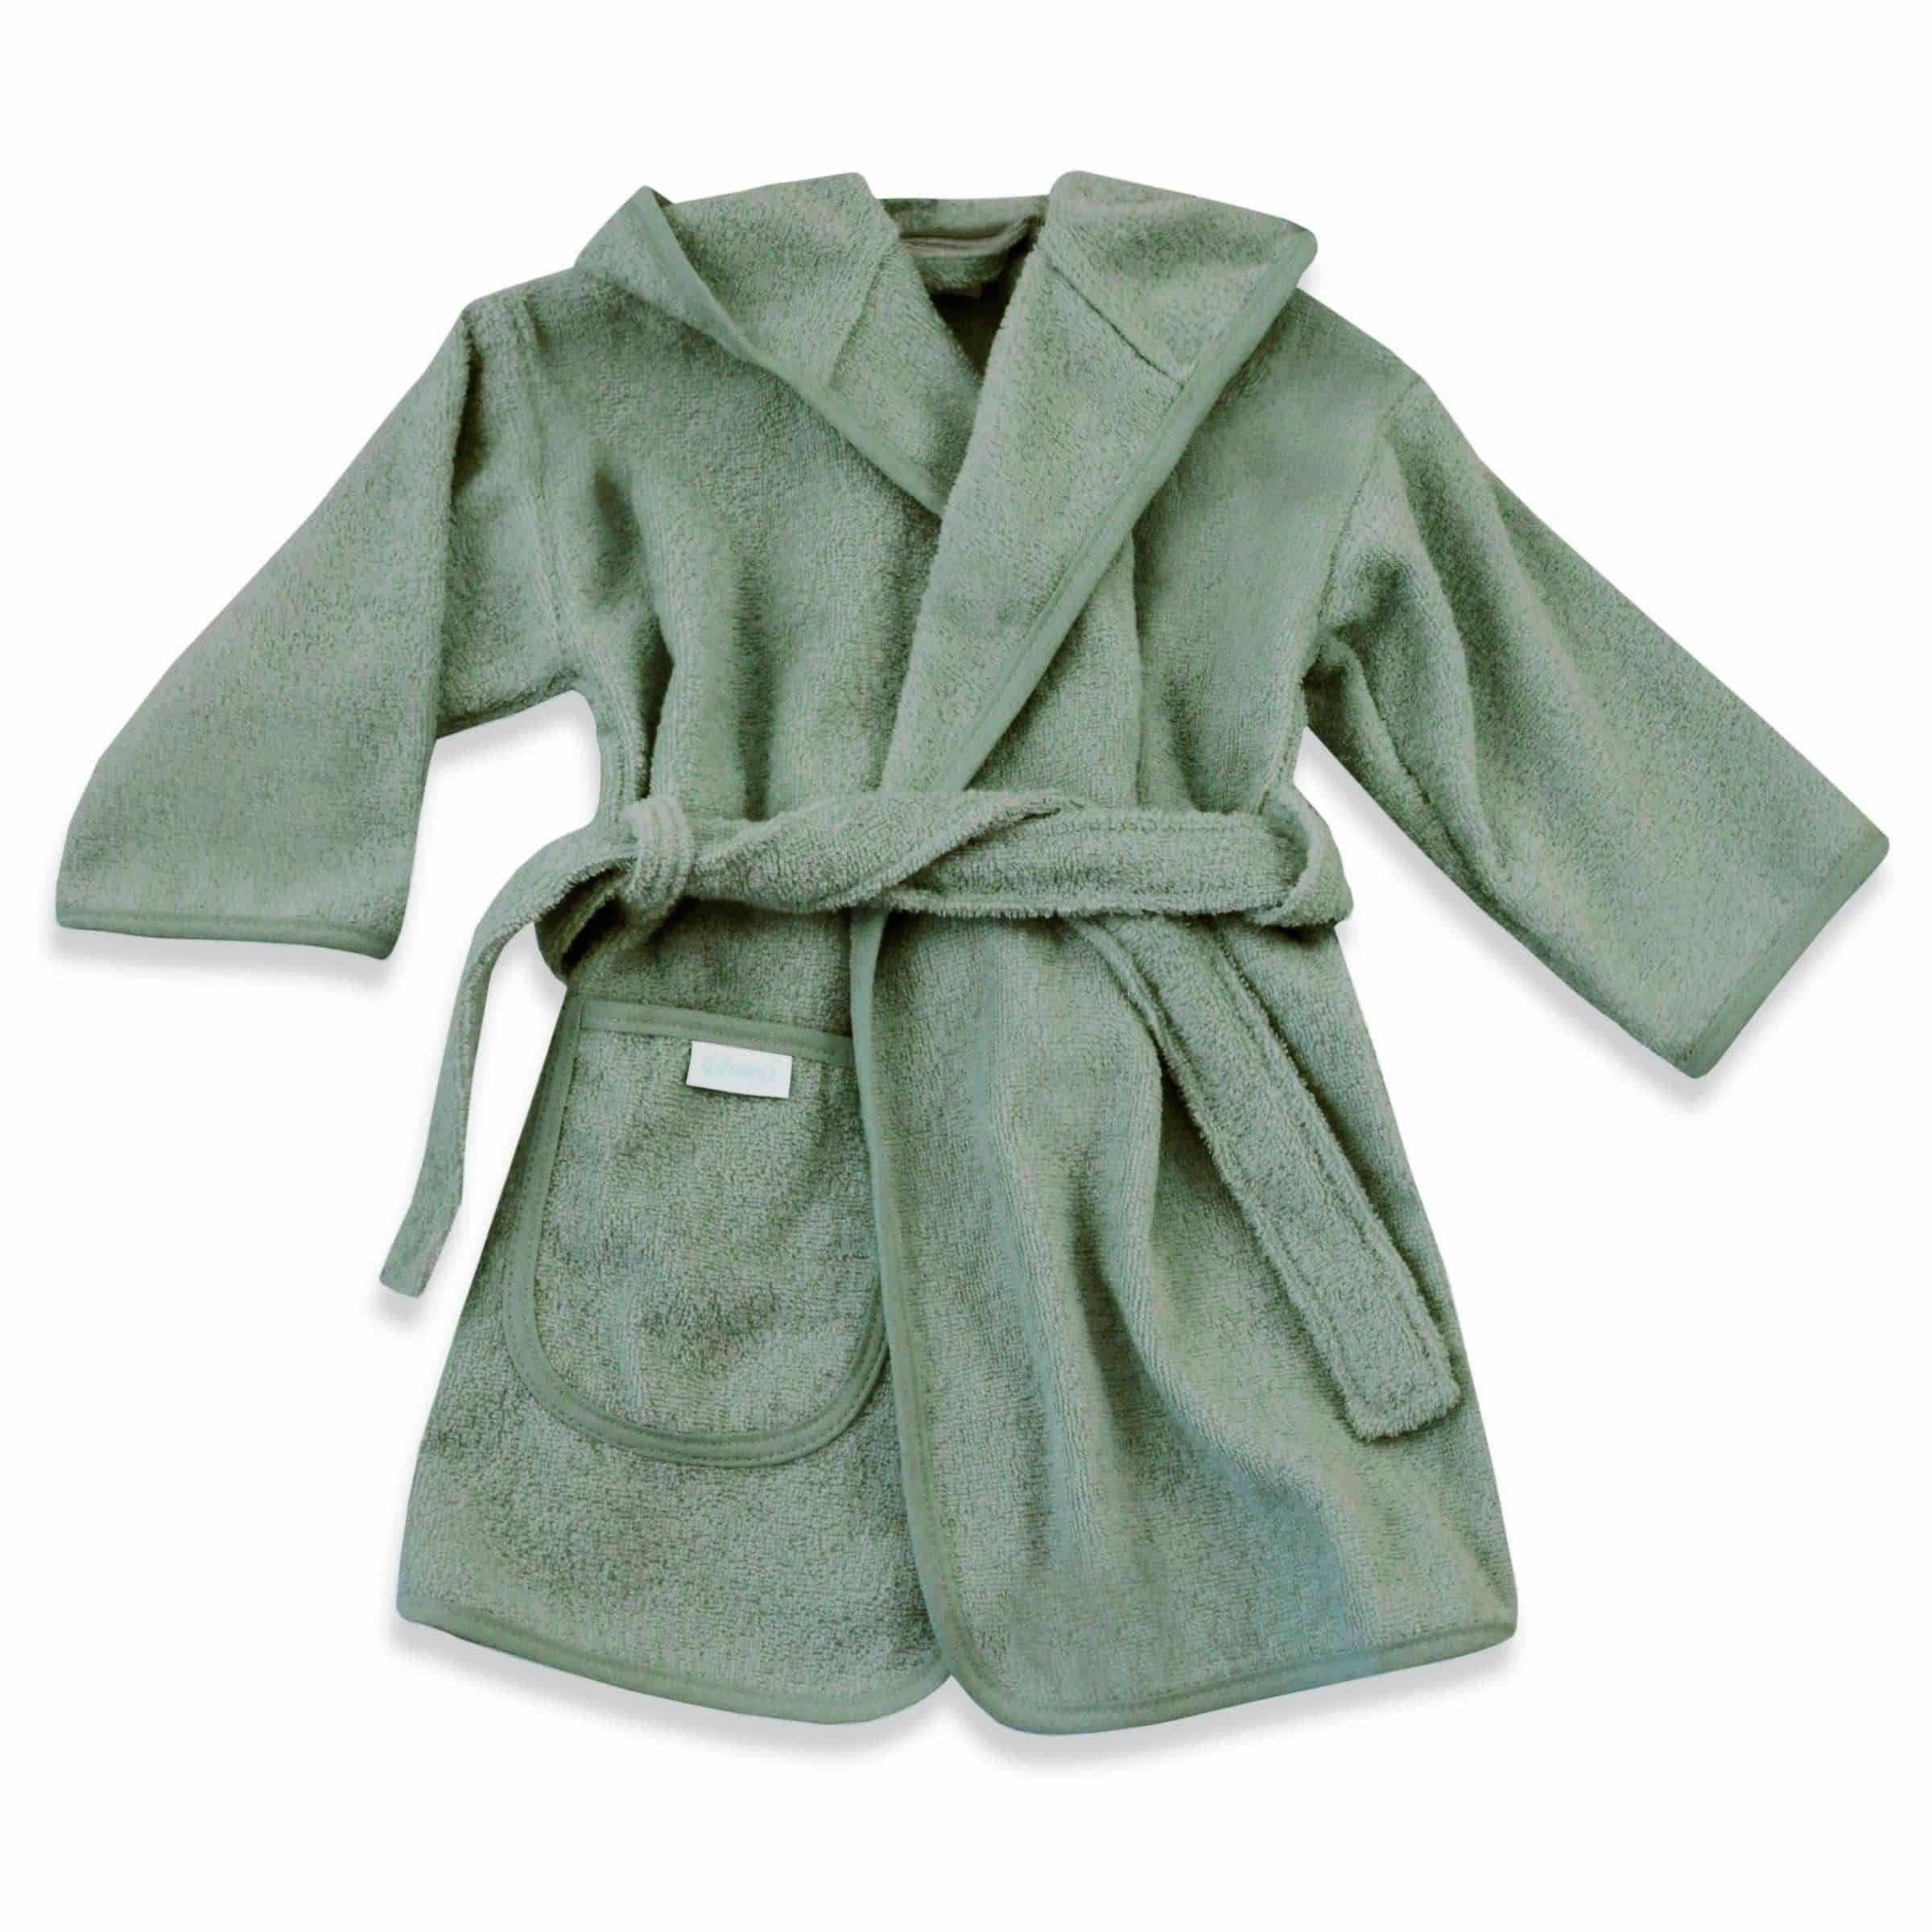 badjas oud groen met naam